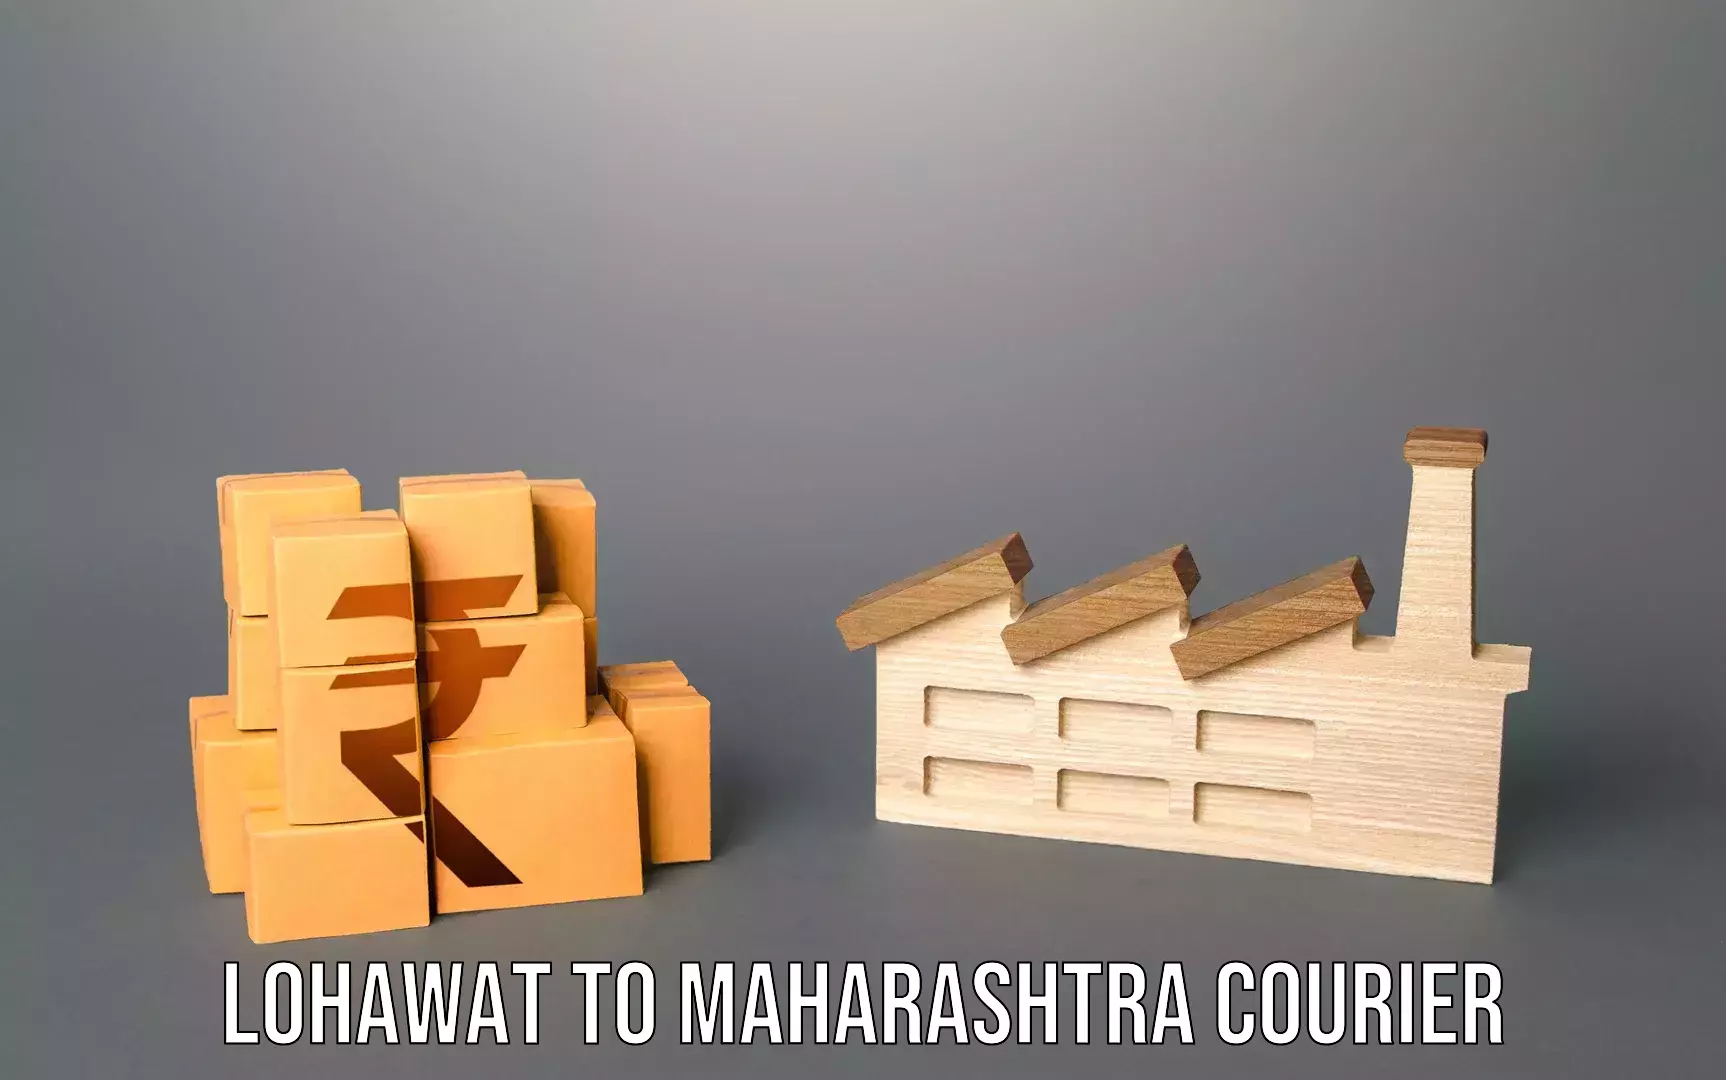 Luggage transport consulting Lohawat to Maharashtra